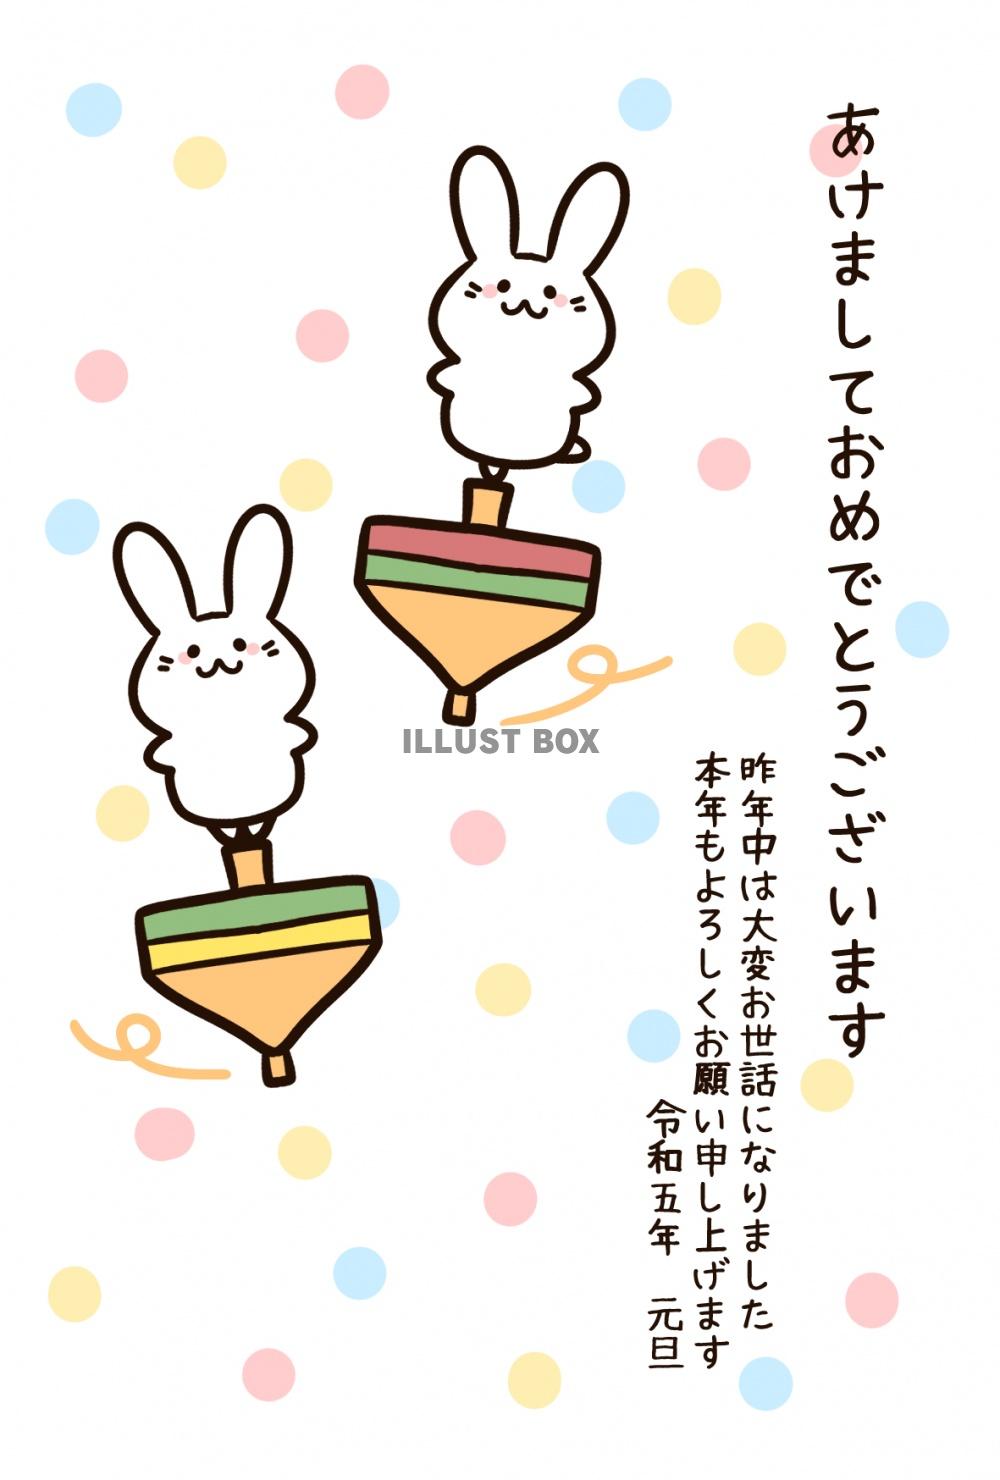 駒で遊ぶ二匹のウサギの楽しい雰囲気の年賀状テンプレート